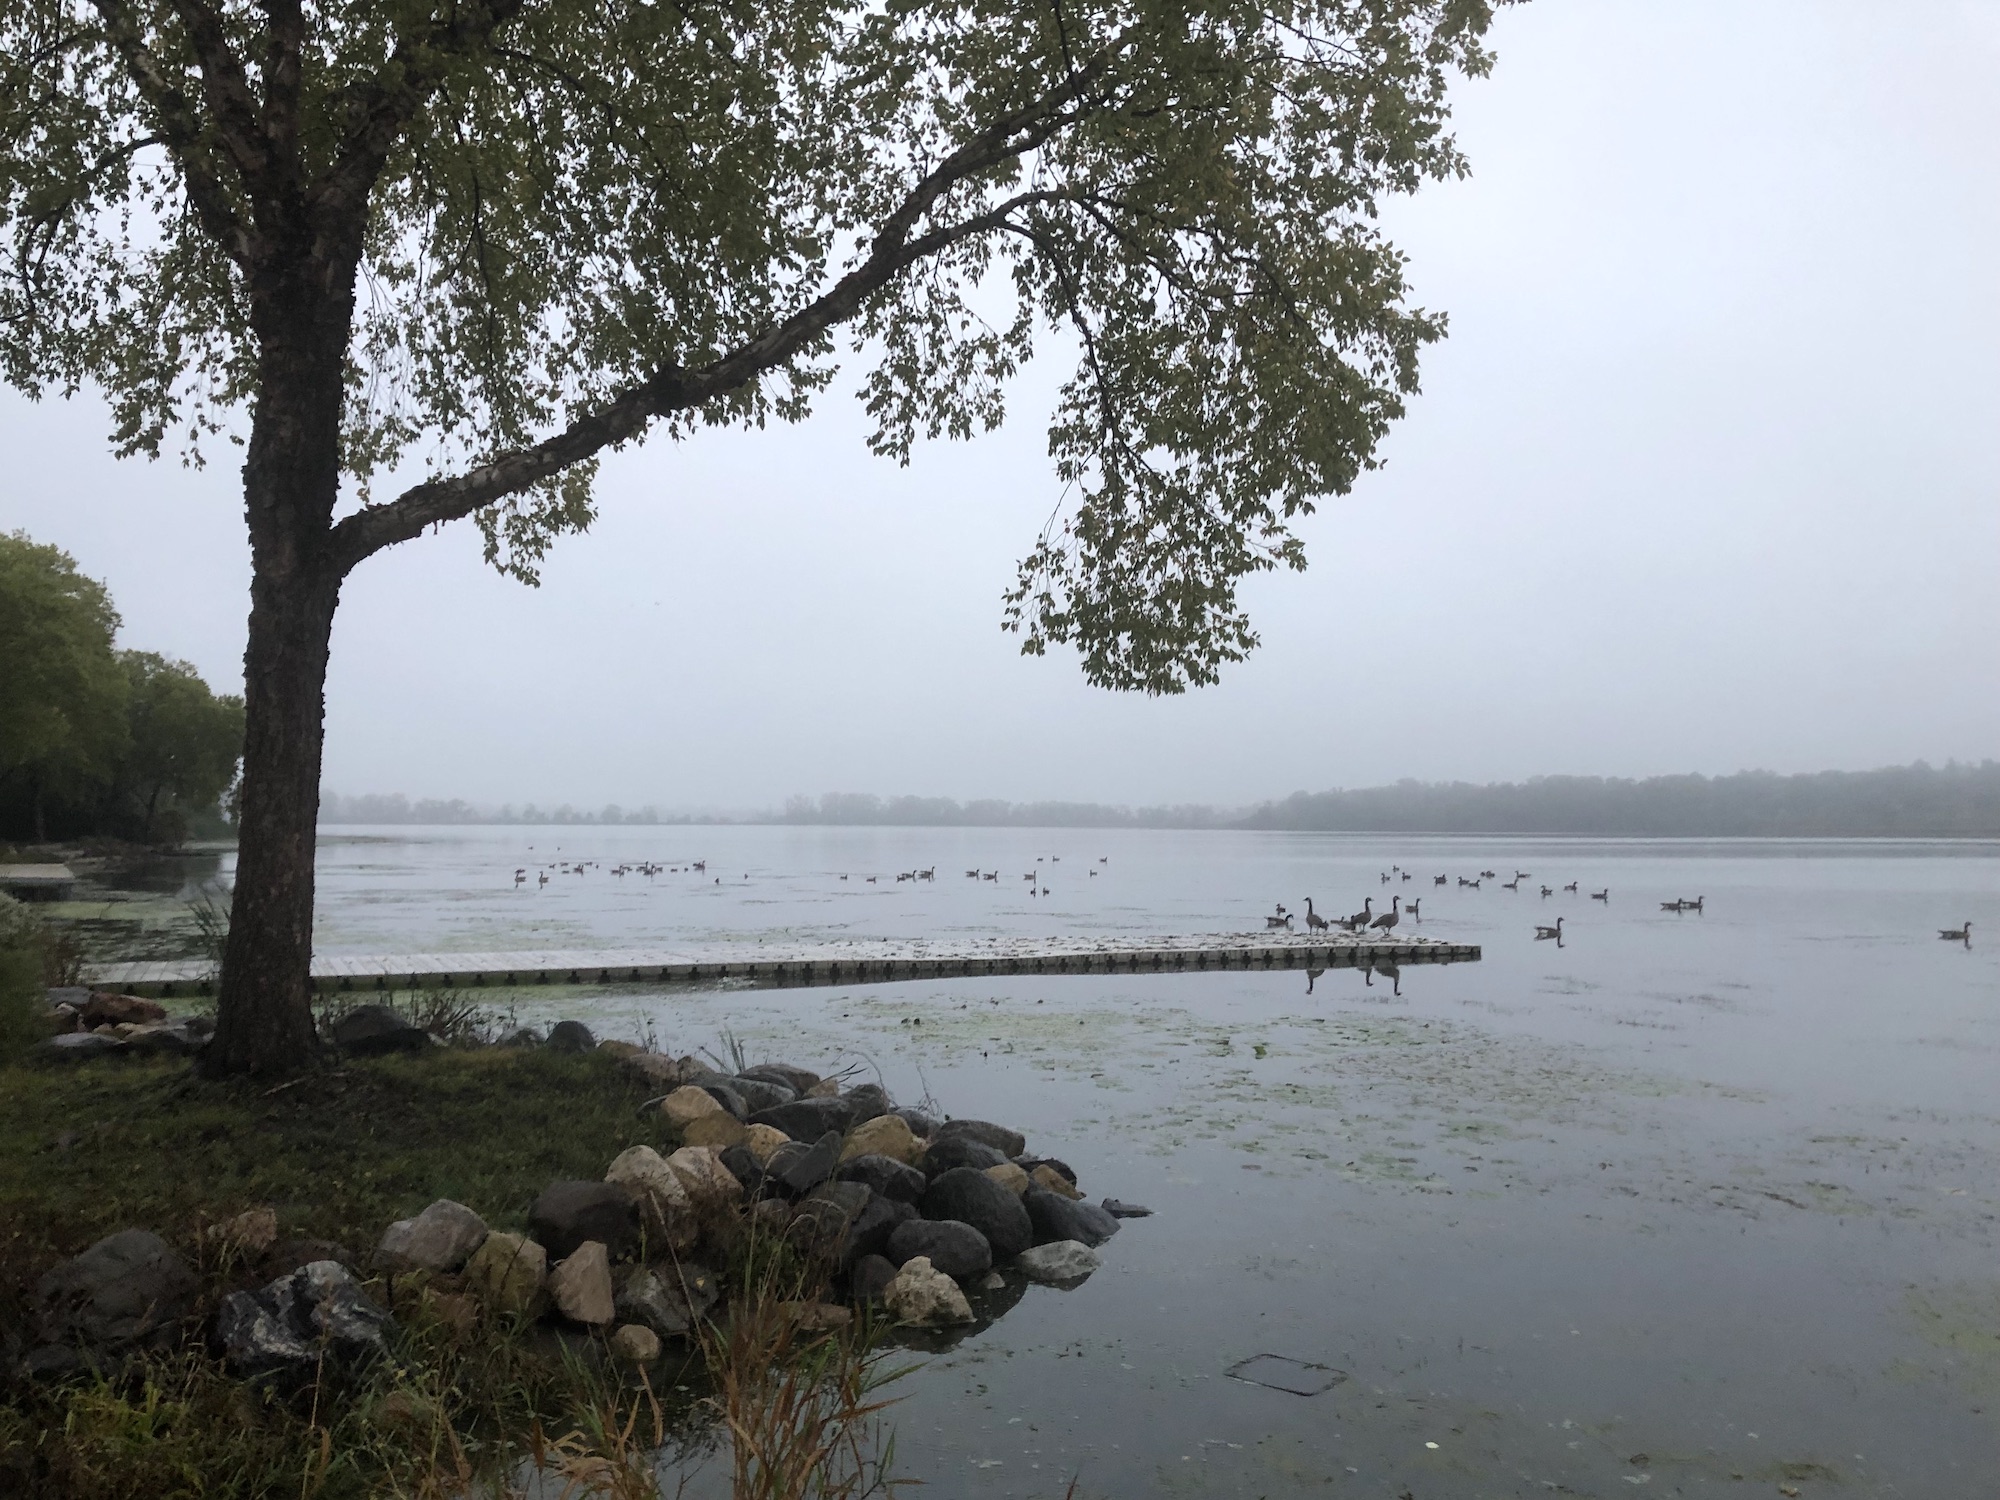 Lake Wingra on September 30, 2019.